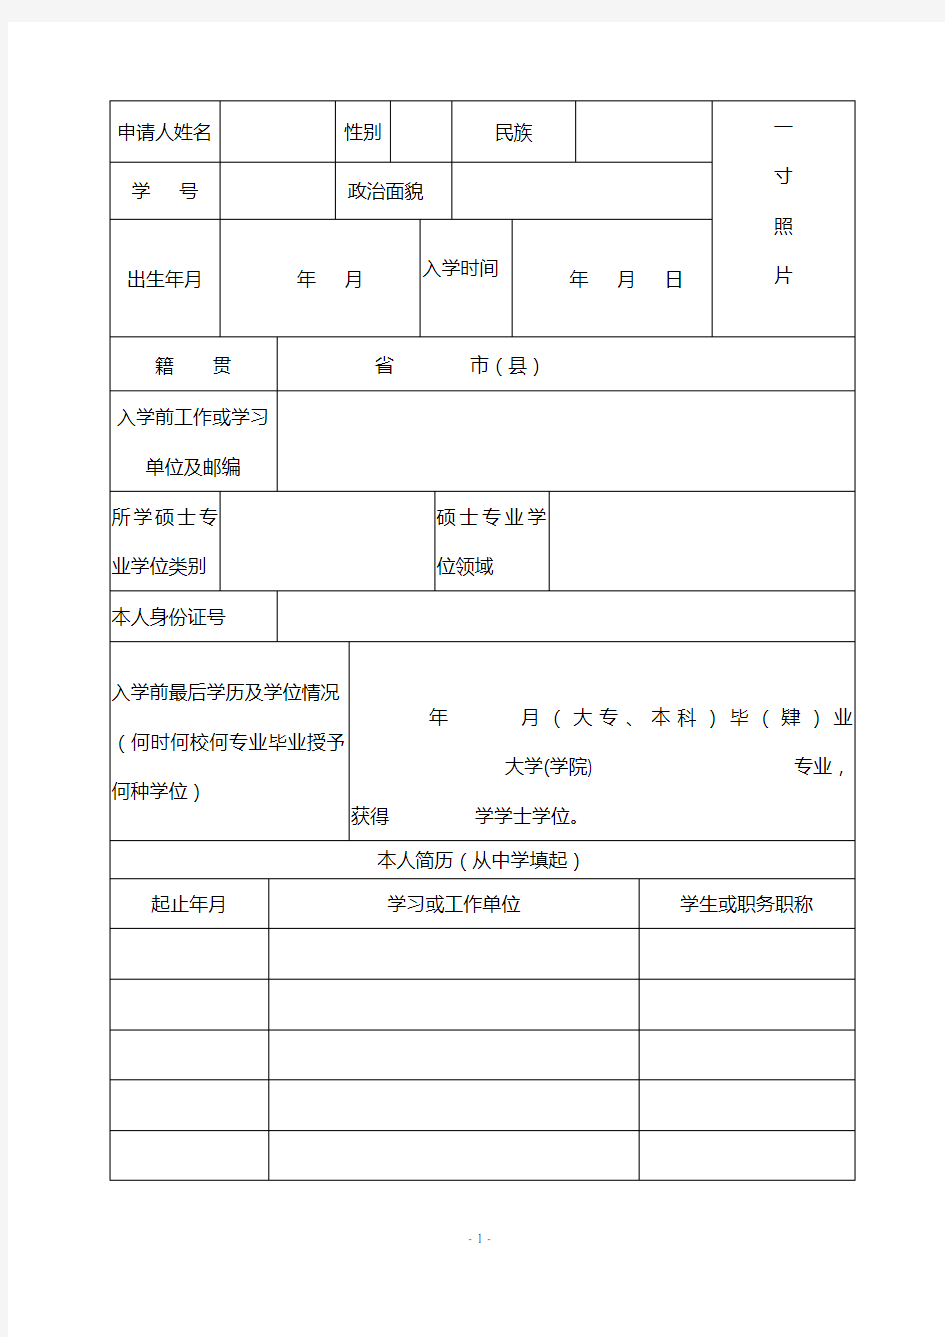 闽南师范大学专业学位研究生申请审批书内页材料(2015年修改)